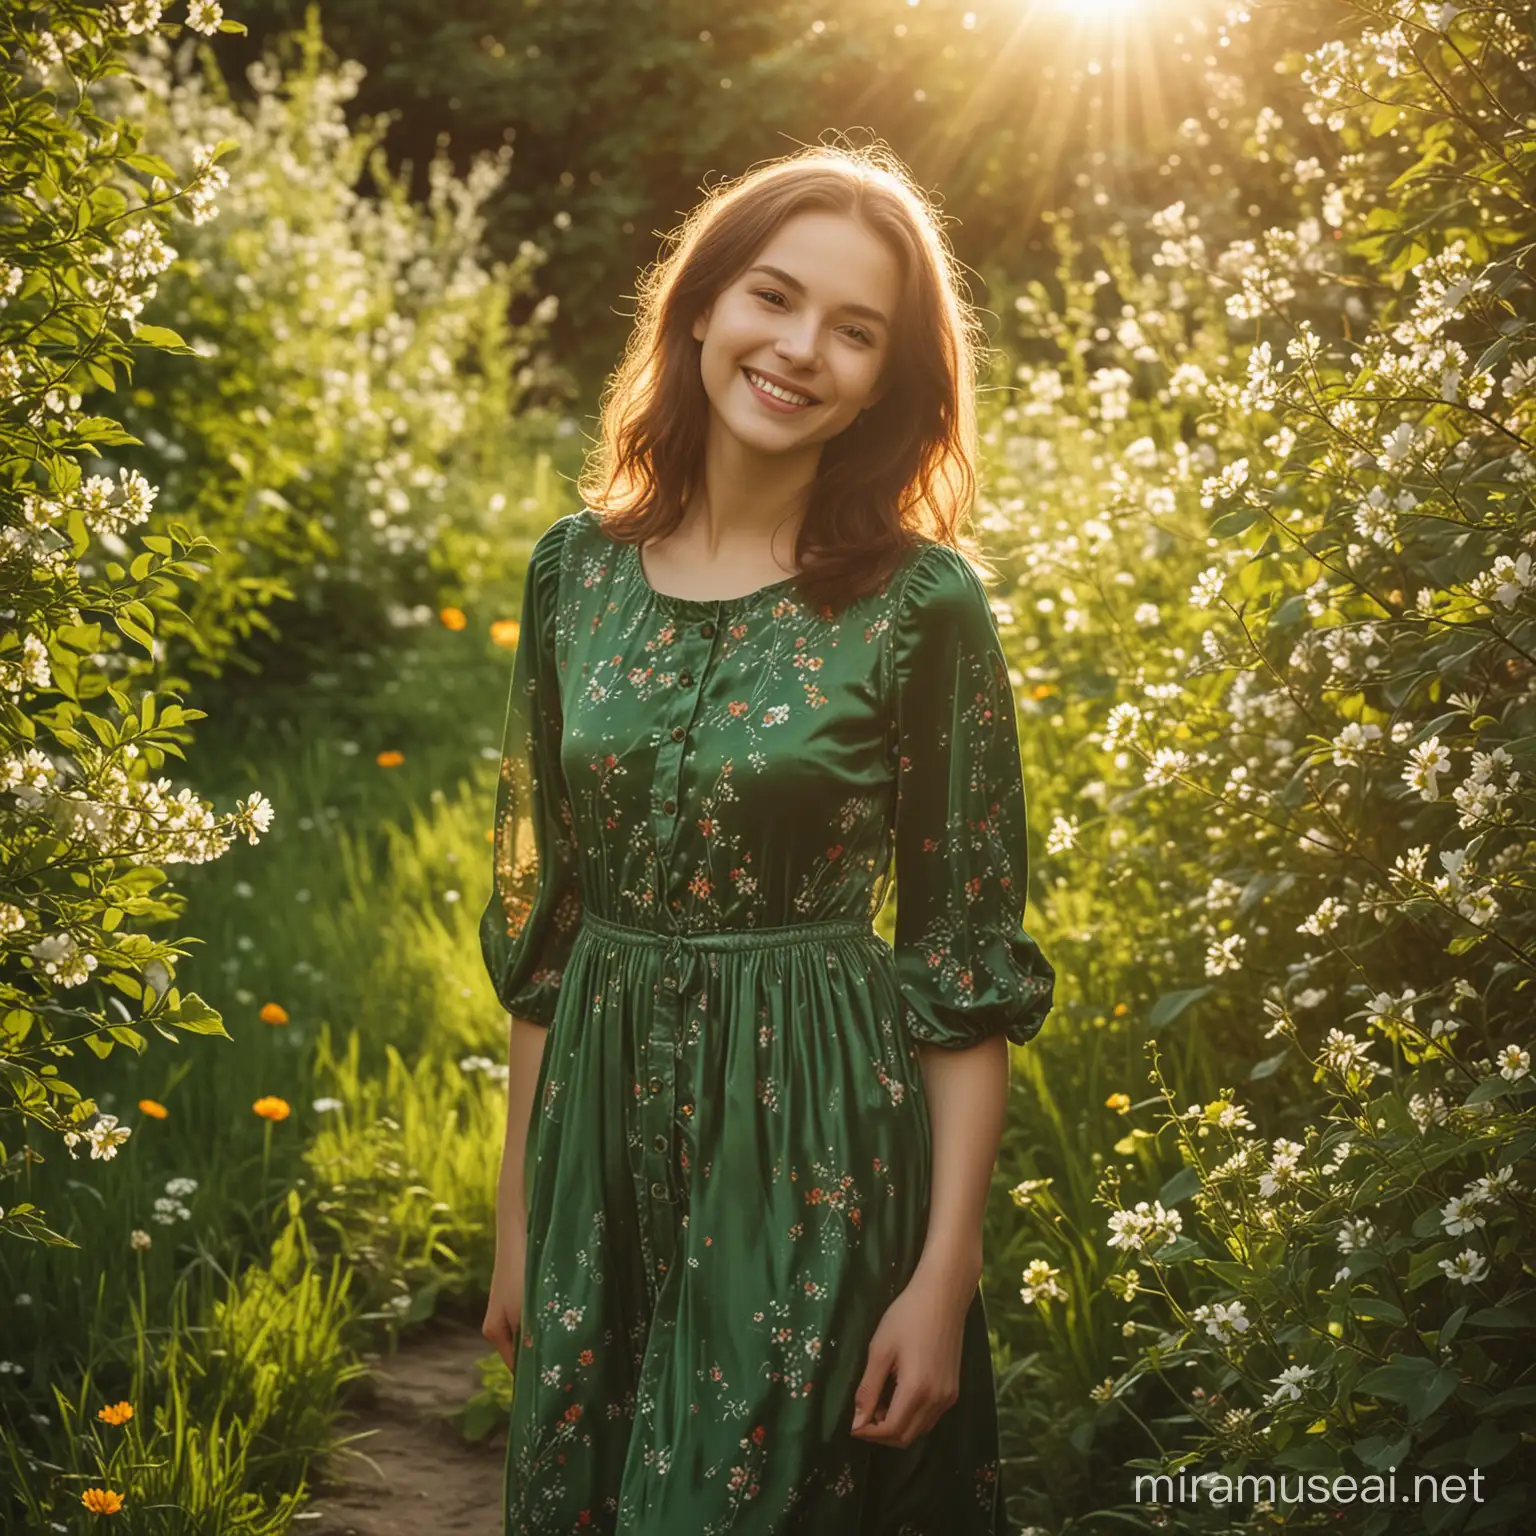 Girl in Green Velvet Dress Embraces Spring Dawn in Blossoming Garden